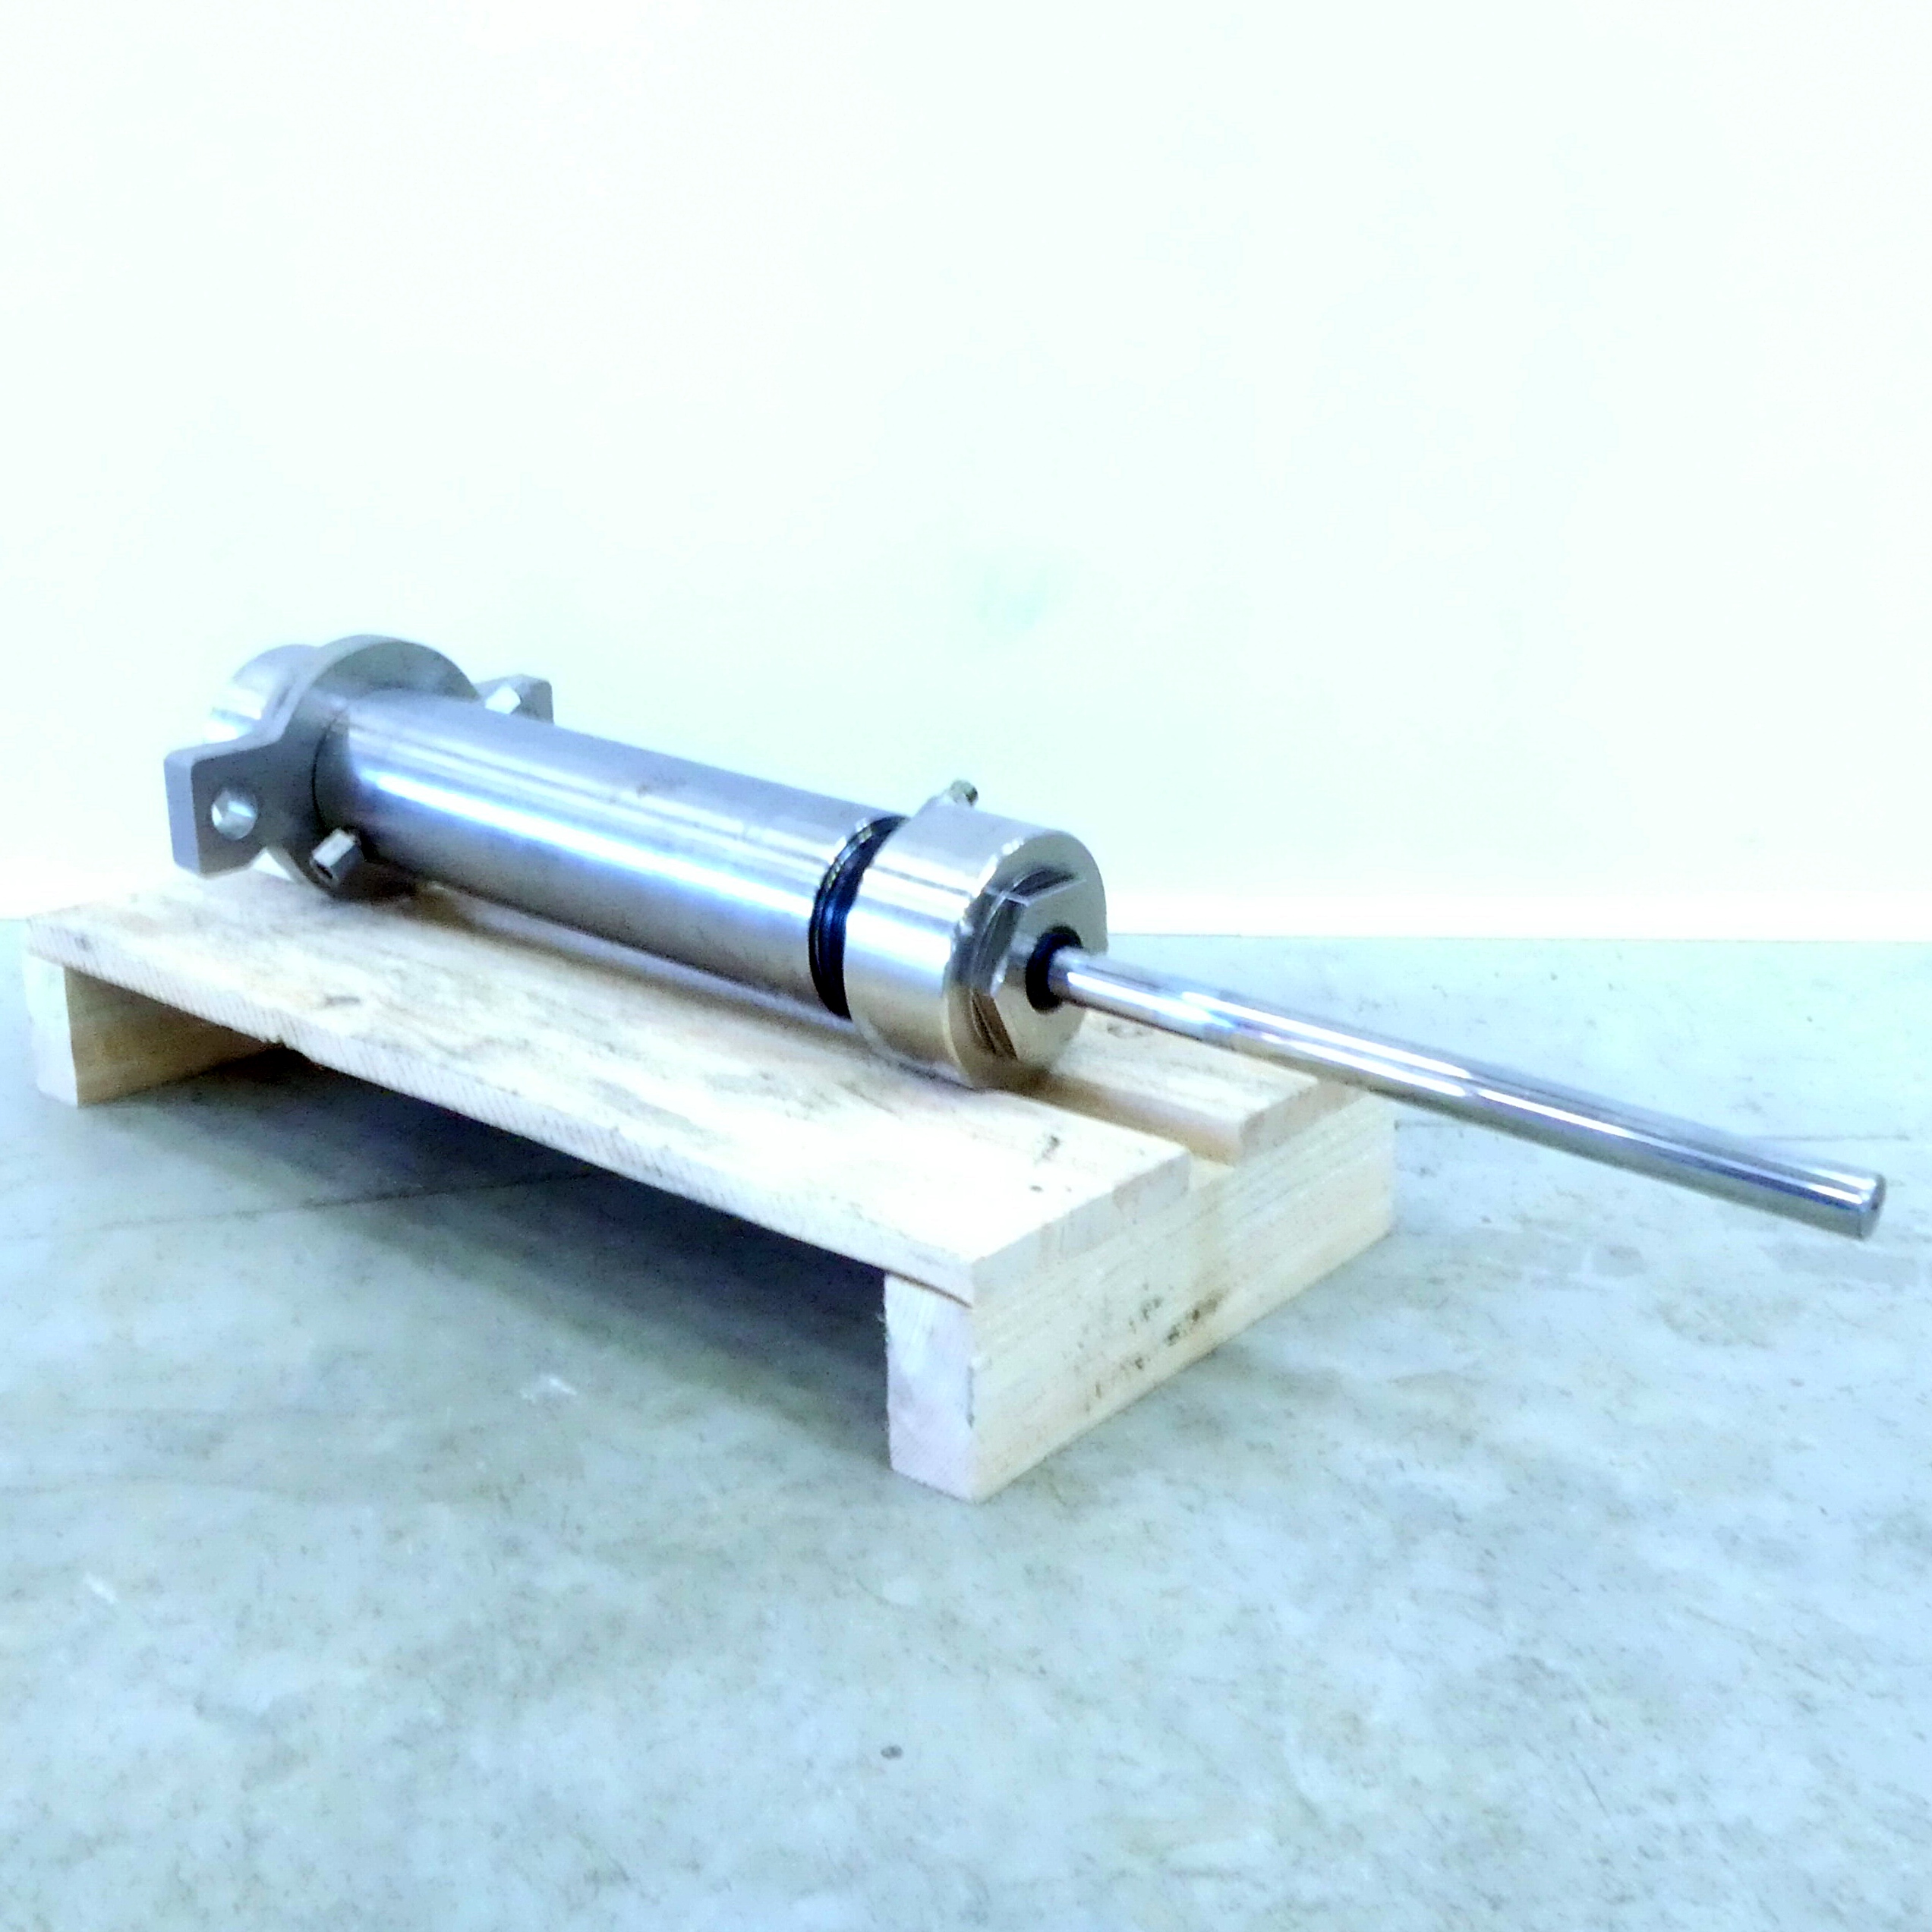 pressure intensifier / hydraulic cylinder 20.100.255 